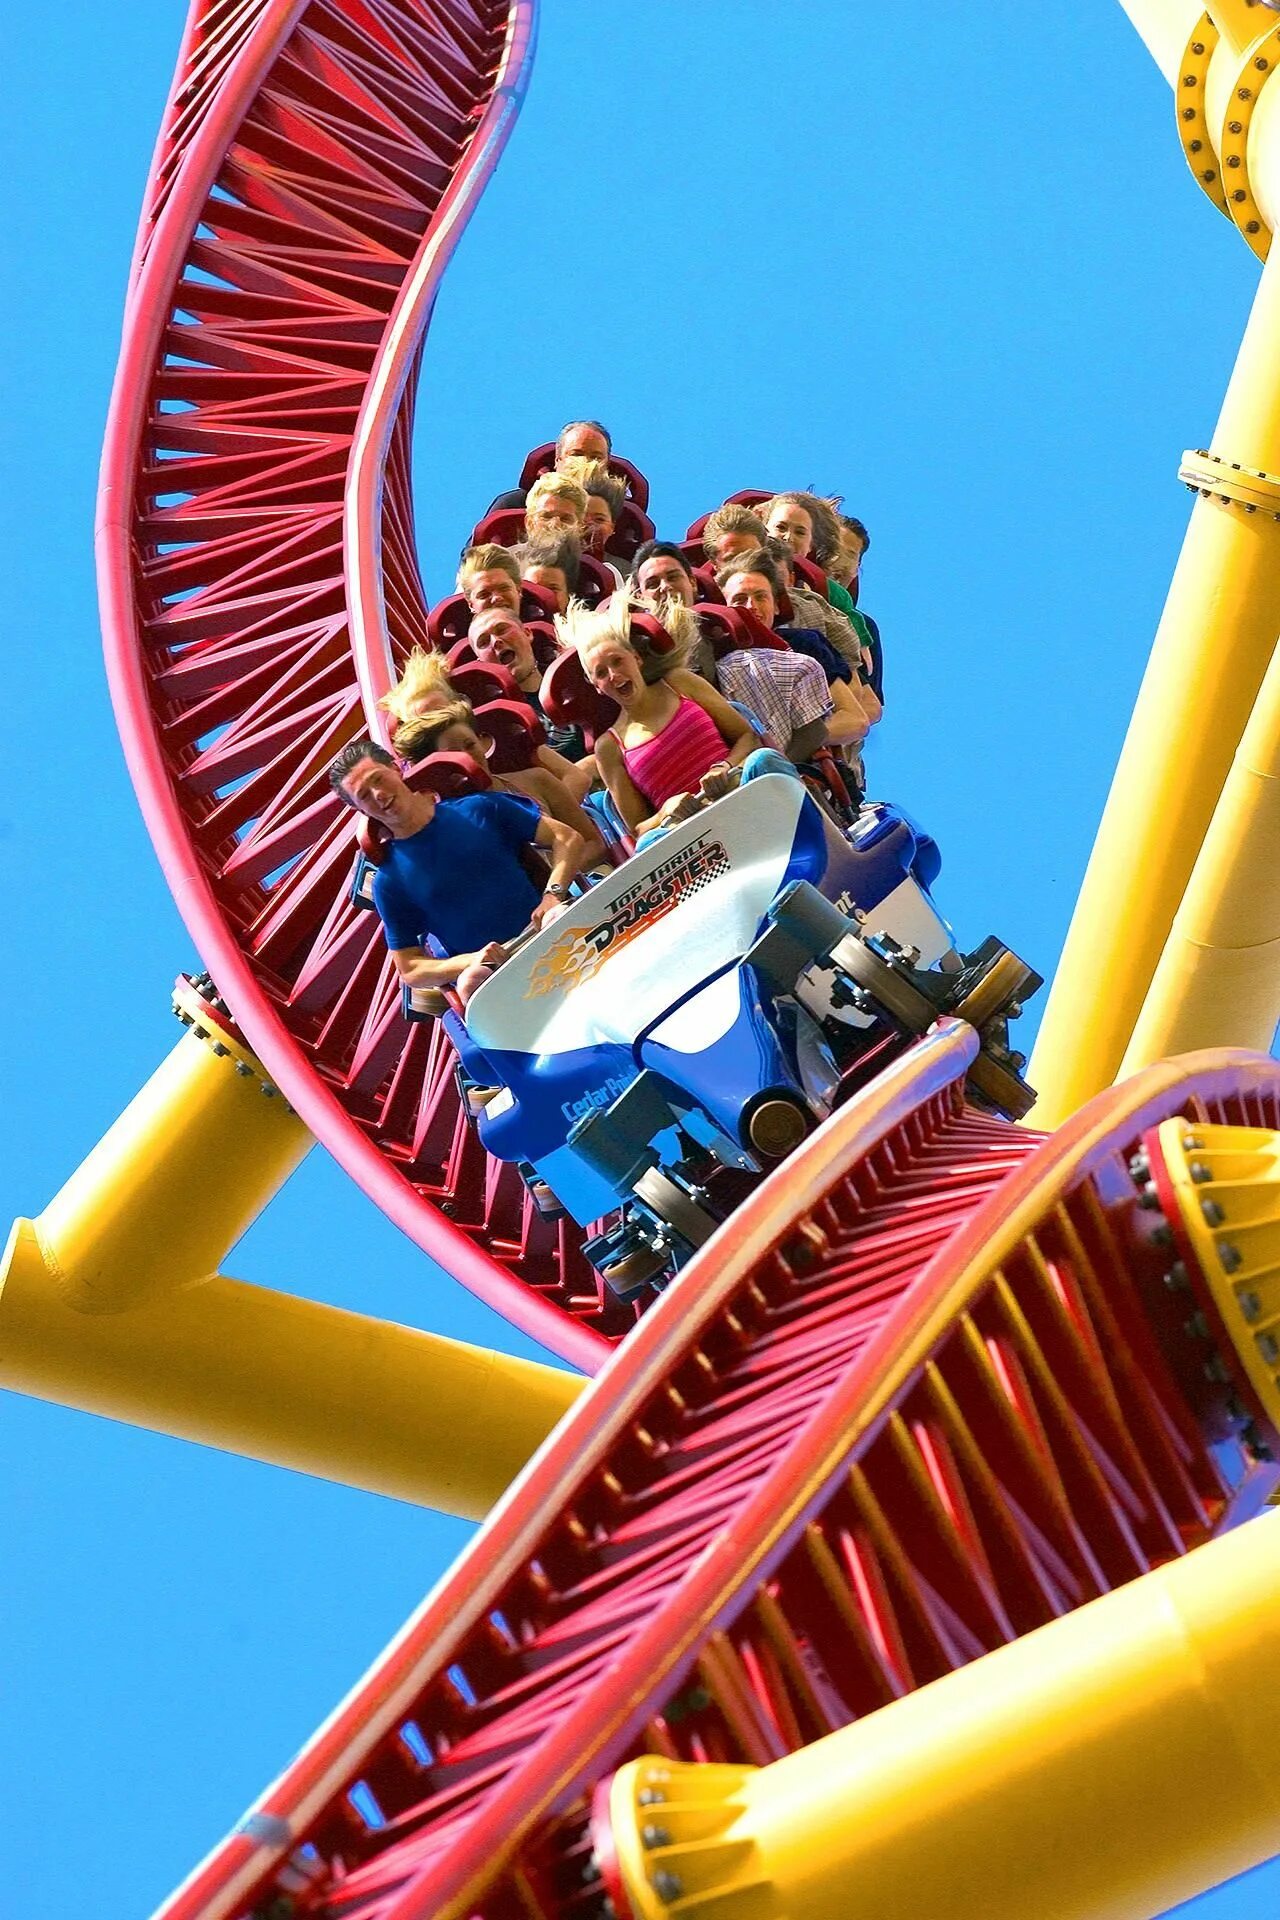 Парк аттракционов кататься. Аттракцион Top Thrill Dragster. Парк развлечений Cedar point Amusement Park. Диснейленд в США американские горки. Roller Coaster аттракцион.